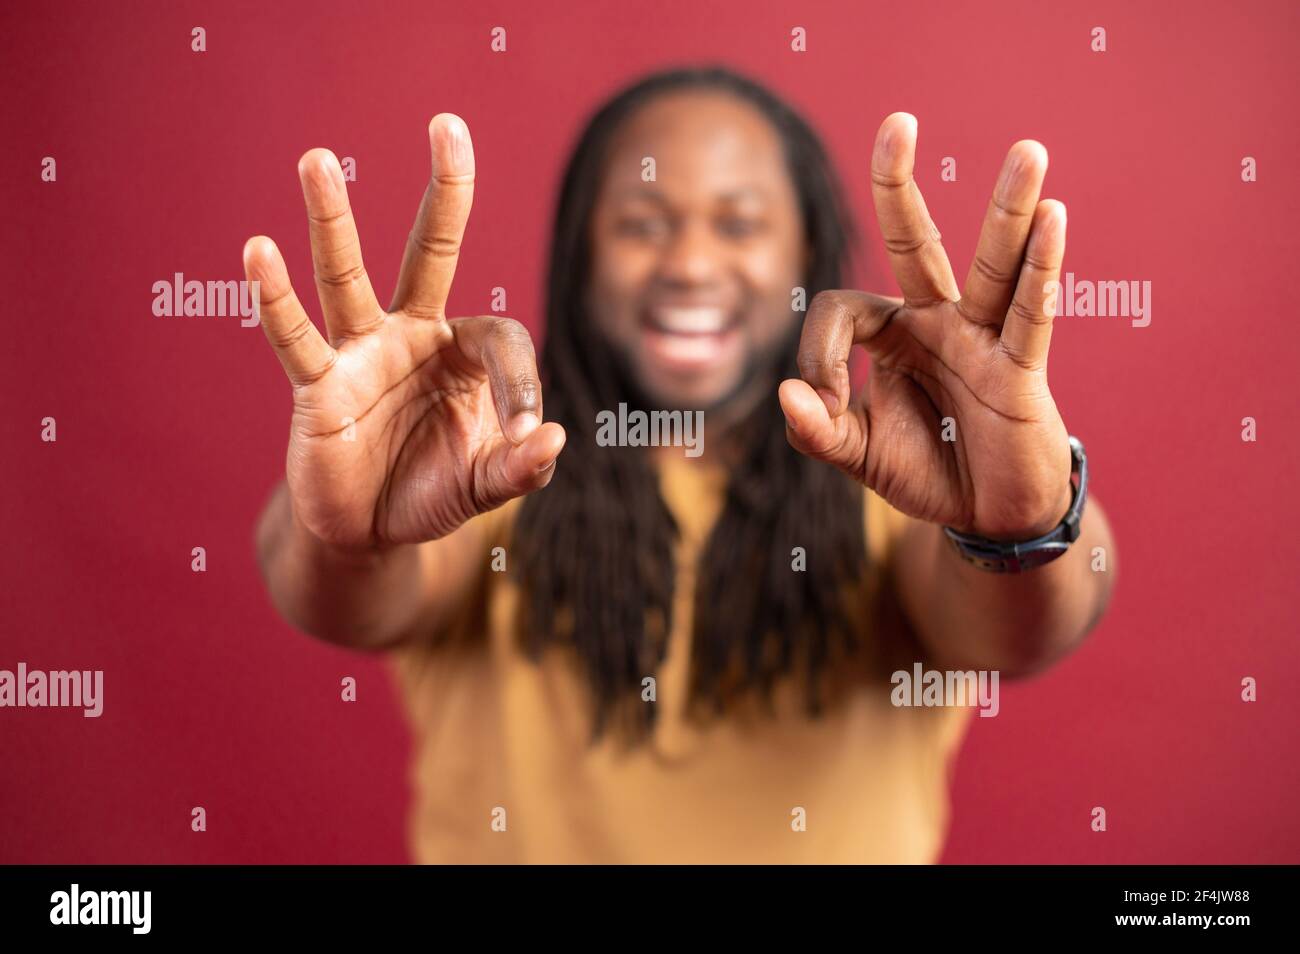 Uomo afroamericano con dreadlock isolato sulla parete rossa guardando la macchina fotografica, che mostra il segno giusto con entrambe le mani, gesturing e sorridente, felicità, concetto di pace e benessere, fuoco selettivo sulle mani Foto Stock